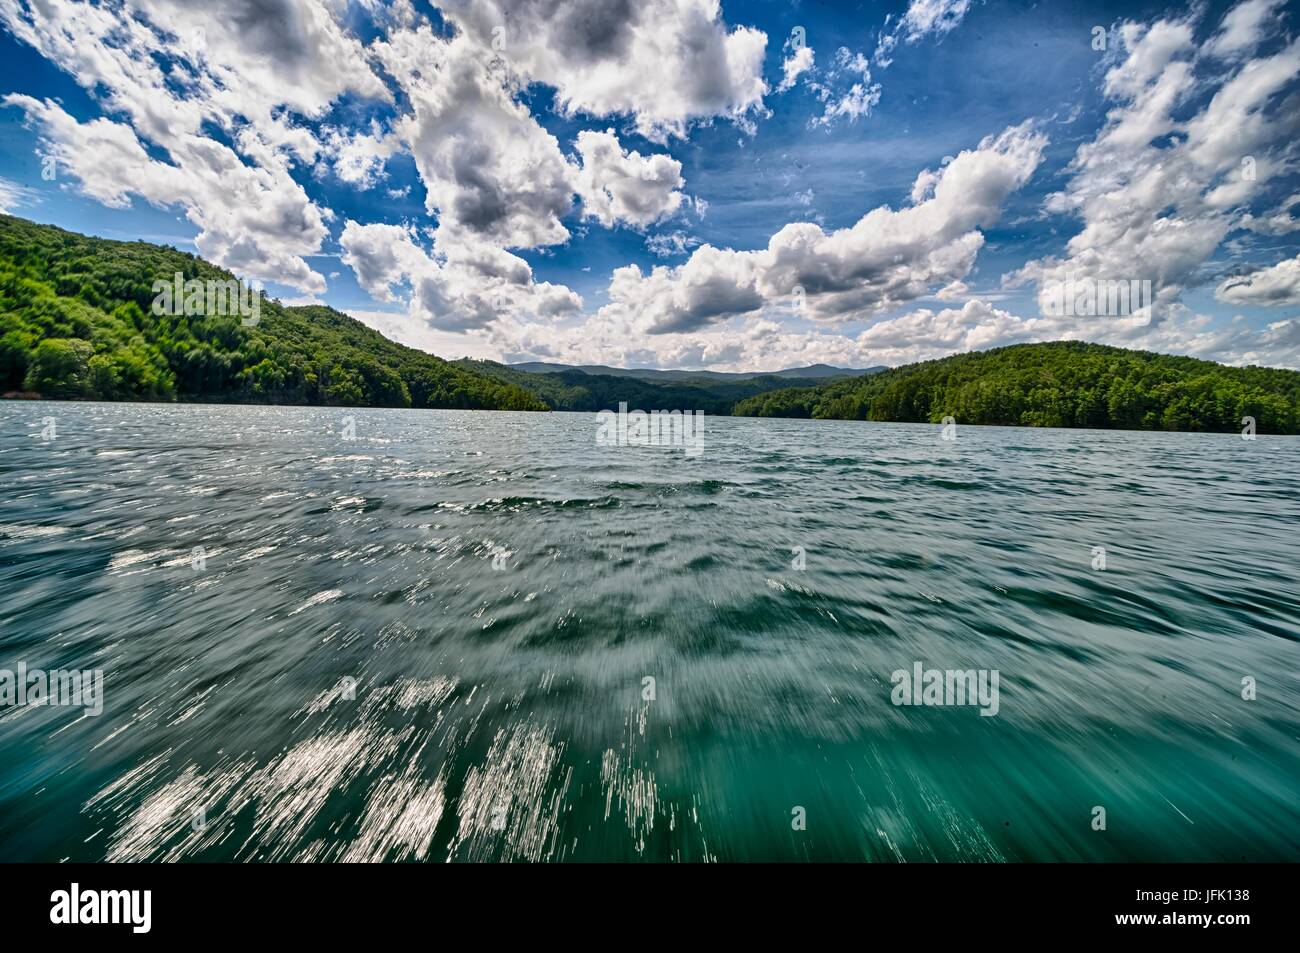 beautiful landscape scenes at lake jocassee south carolina Stock Photo